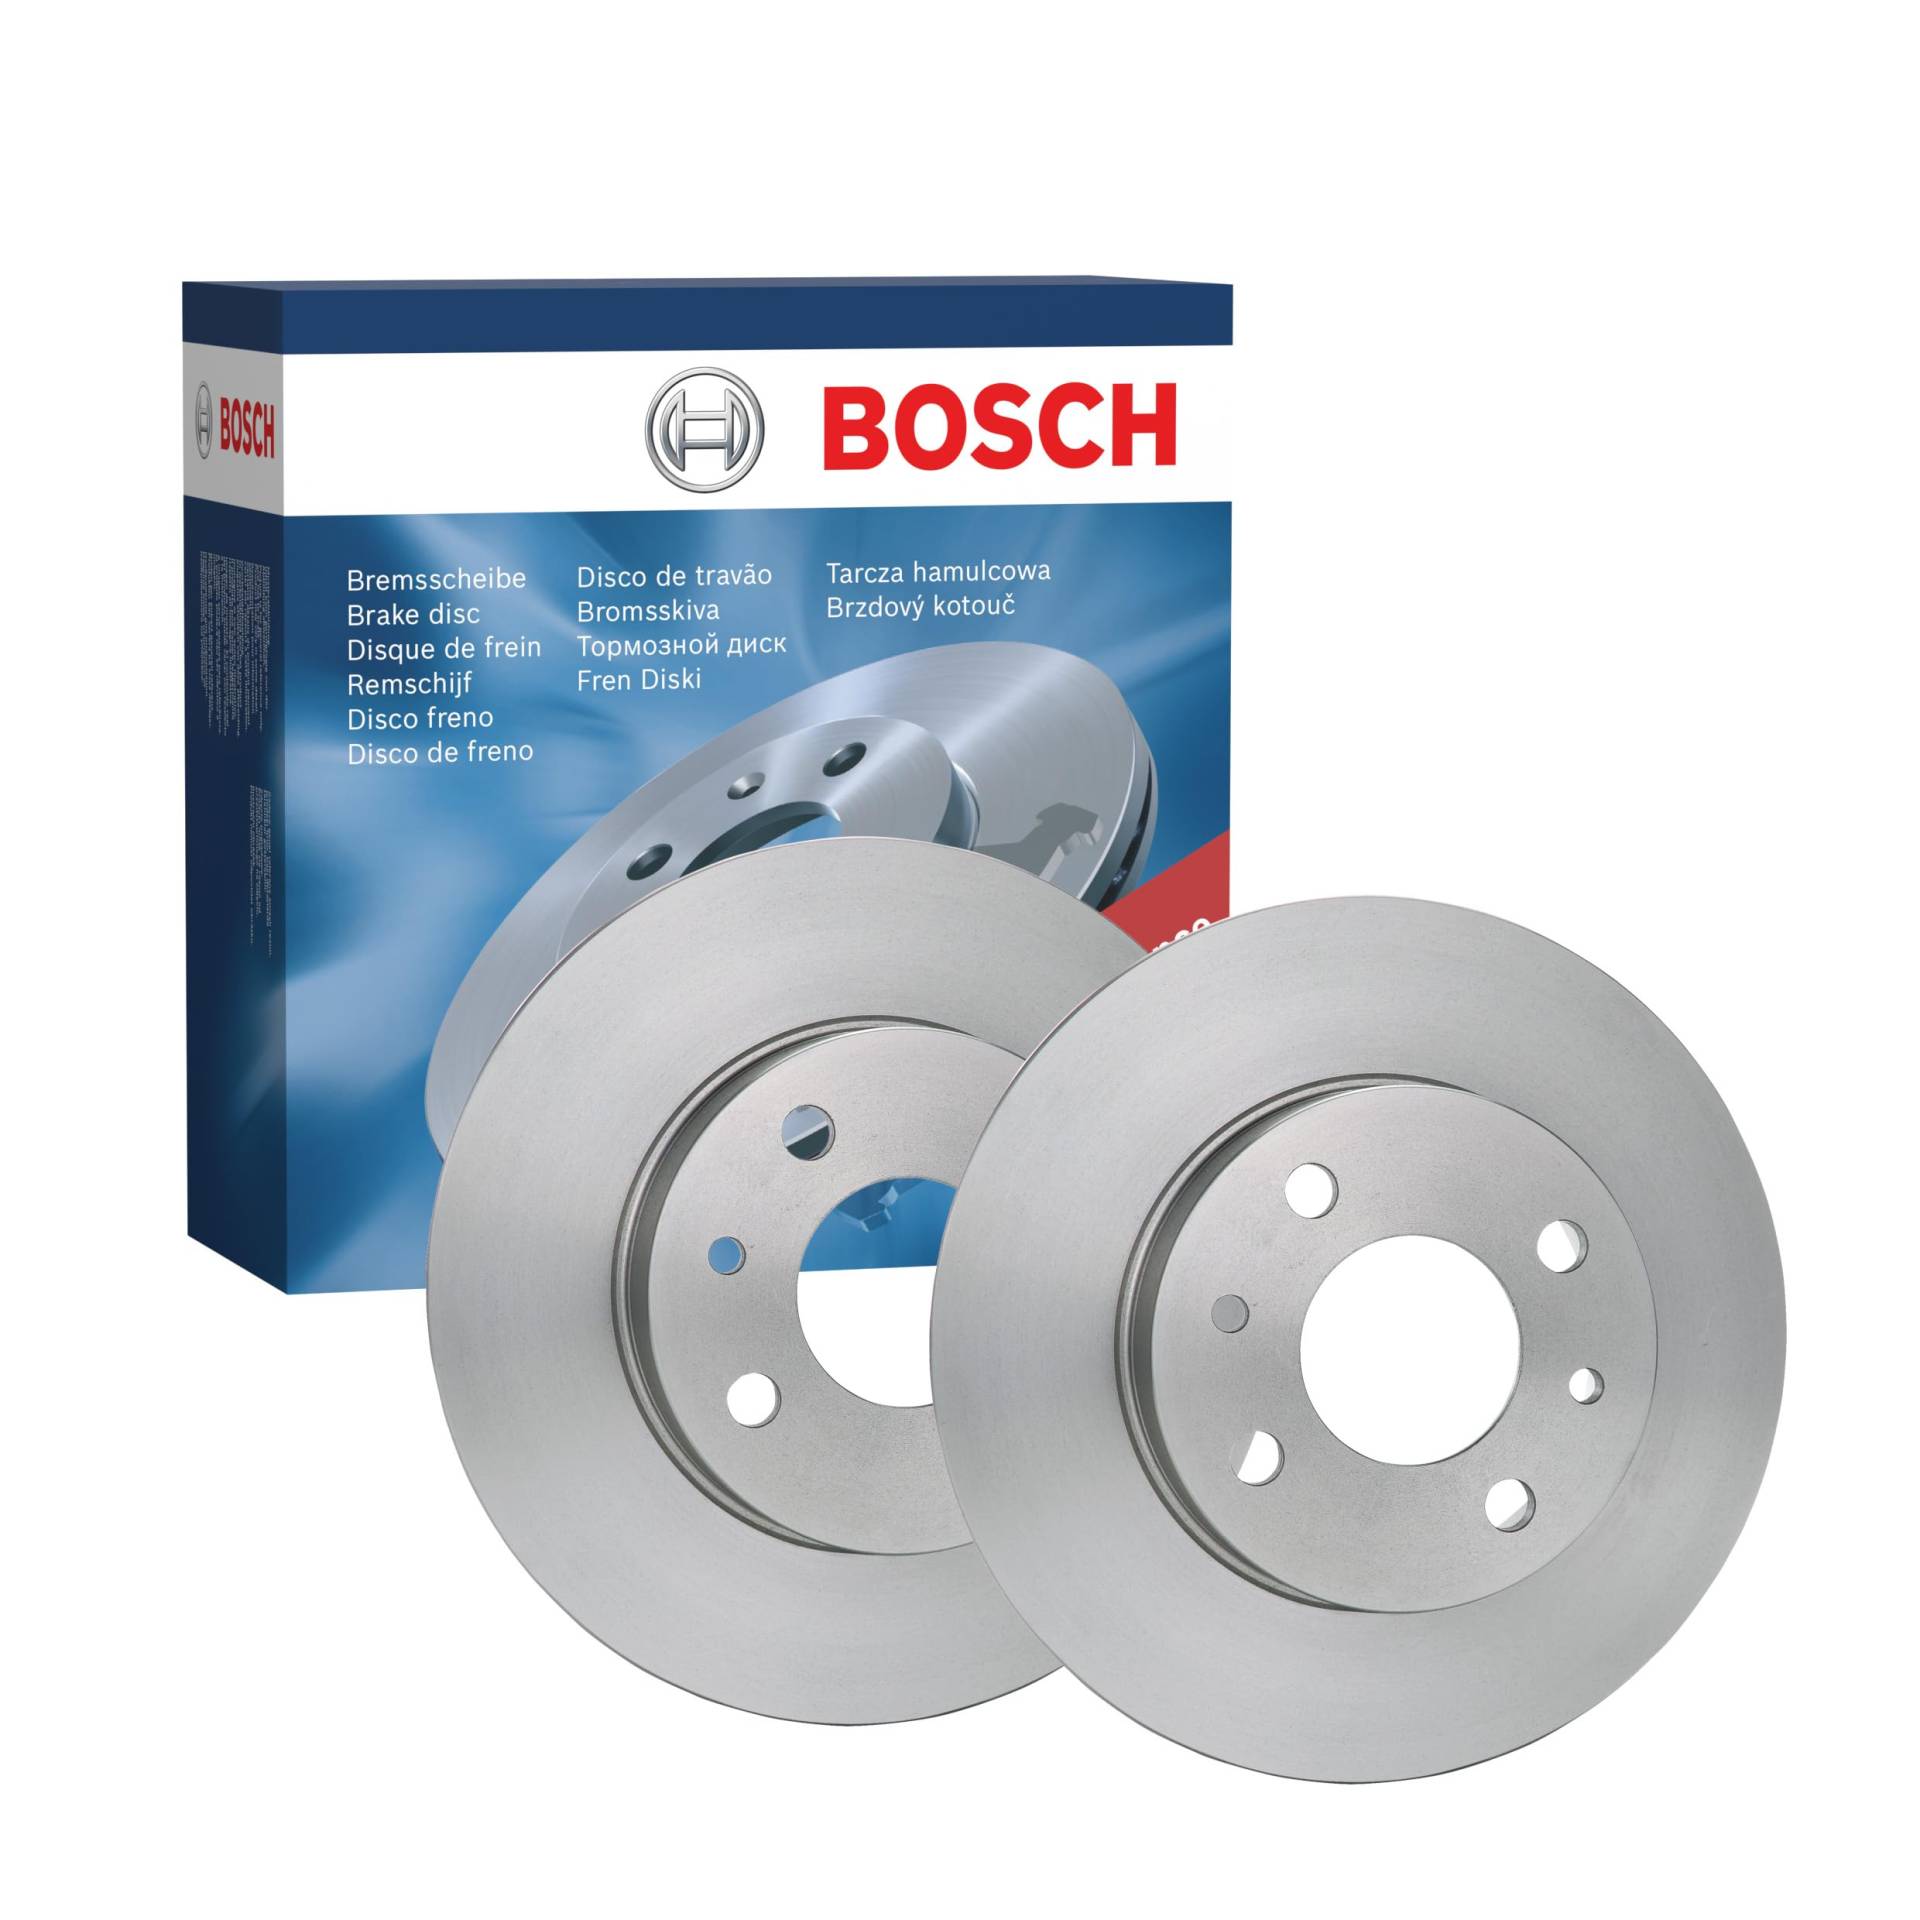 Bosch BD282 Bremsscheiben - 0 - ECE-R90 Zertifizierung - zwei Bremsscheiben pro Set von Bosch Automotive